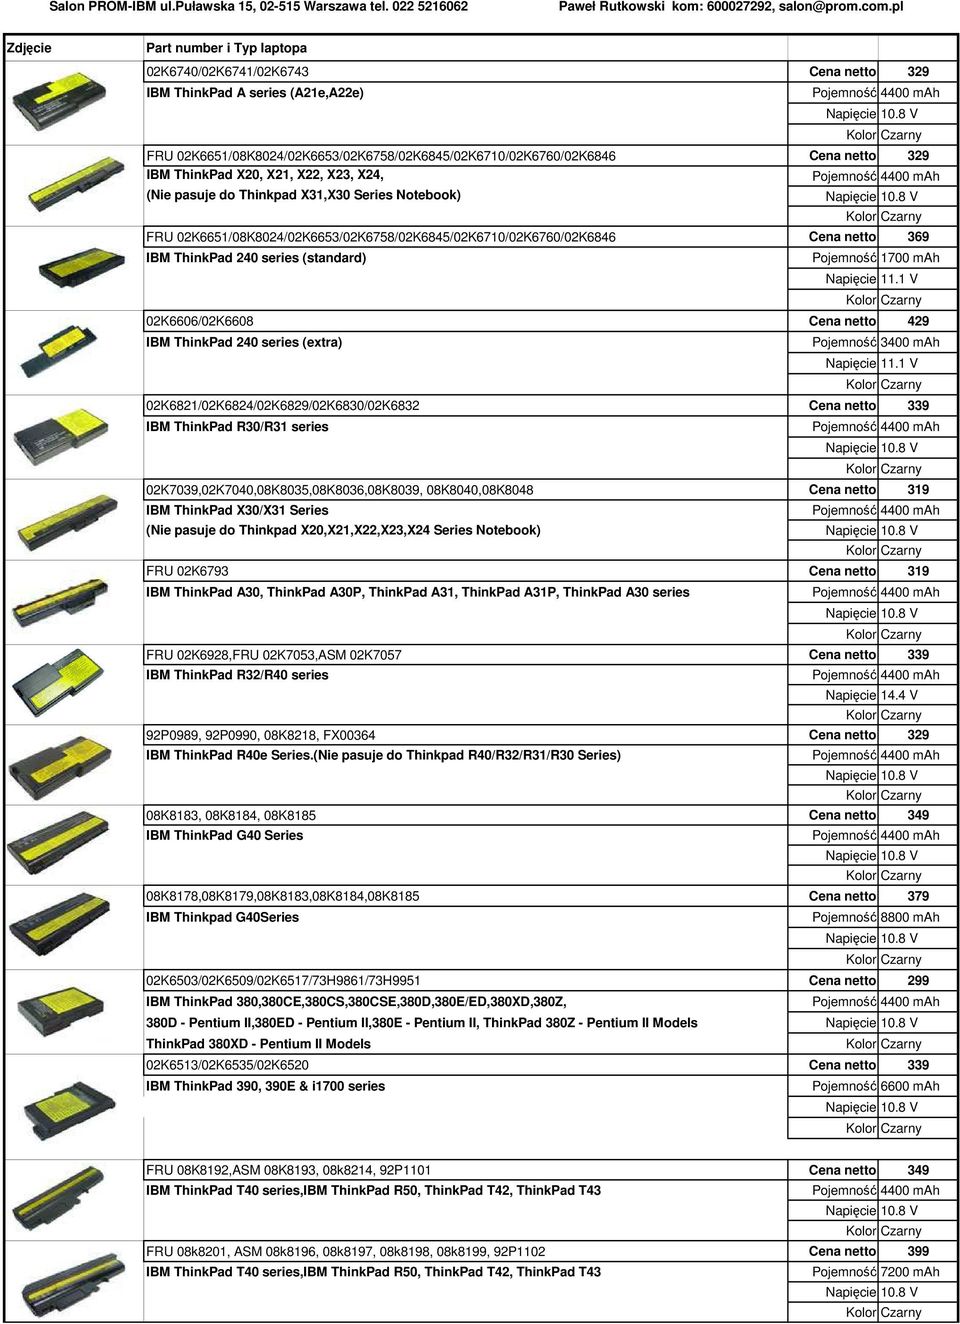 Cena netto 429 IBM ThinkPad 240 series (extra) Pojemność 3400 mah 02K6821/02K6824/02K6829/02K6830/02K6832 Cena netto 339 IBM ThinkPad R30/R31 series 02K7039,02K7040,08K8035,08K8036,08K8039,